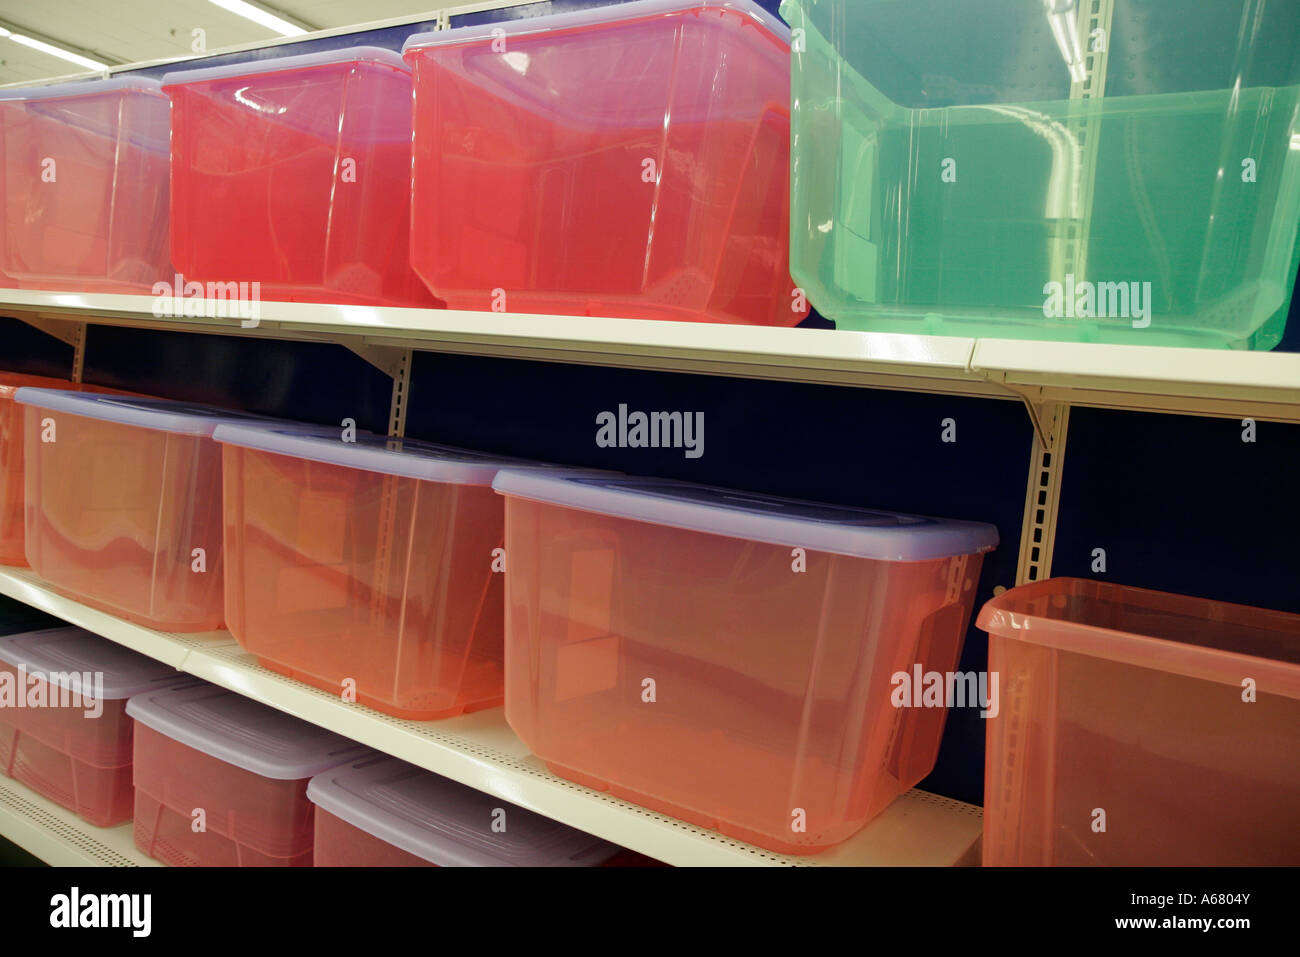 Miami Florida,Kmart Big-Box,contenedores de plástico para  almacenamiento,productos al por menor,venta de cajas de  exhibición,mercancía,embalaje,marcas,varios colores,visitantes de viaje t  Fotografía de stock - Alamy